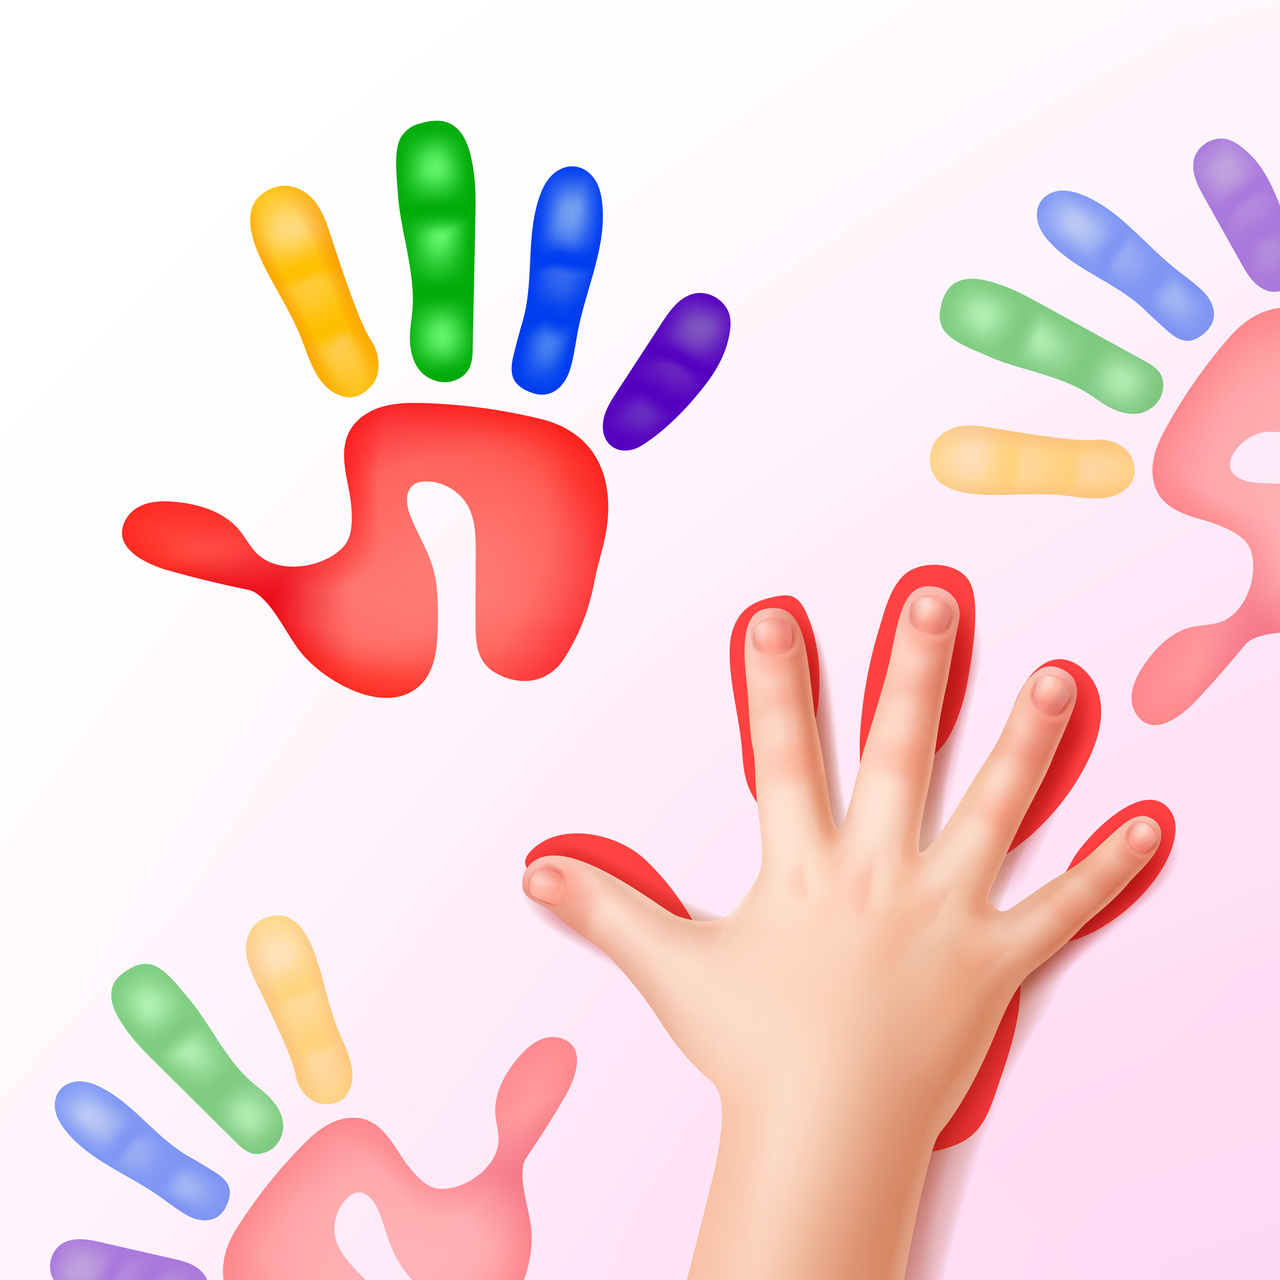 استراتيجية الأصابع الخمسة وكيف تعلمها لأطفالك | مجلة سيدتي